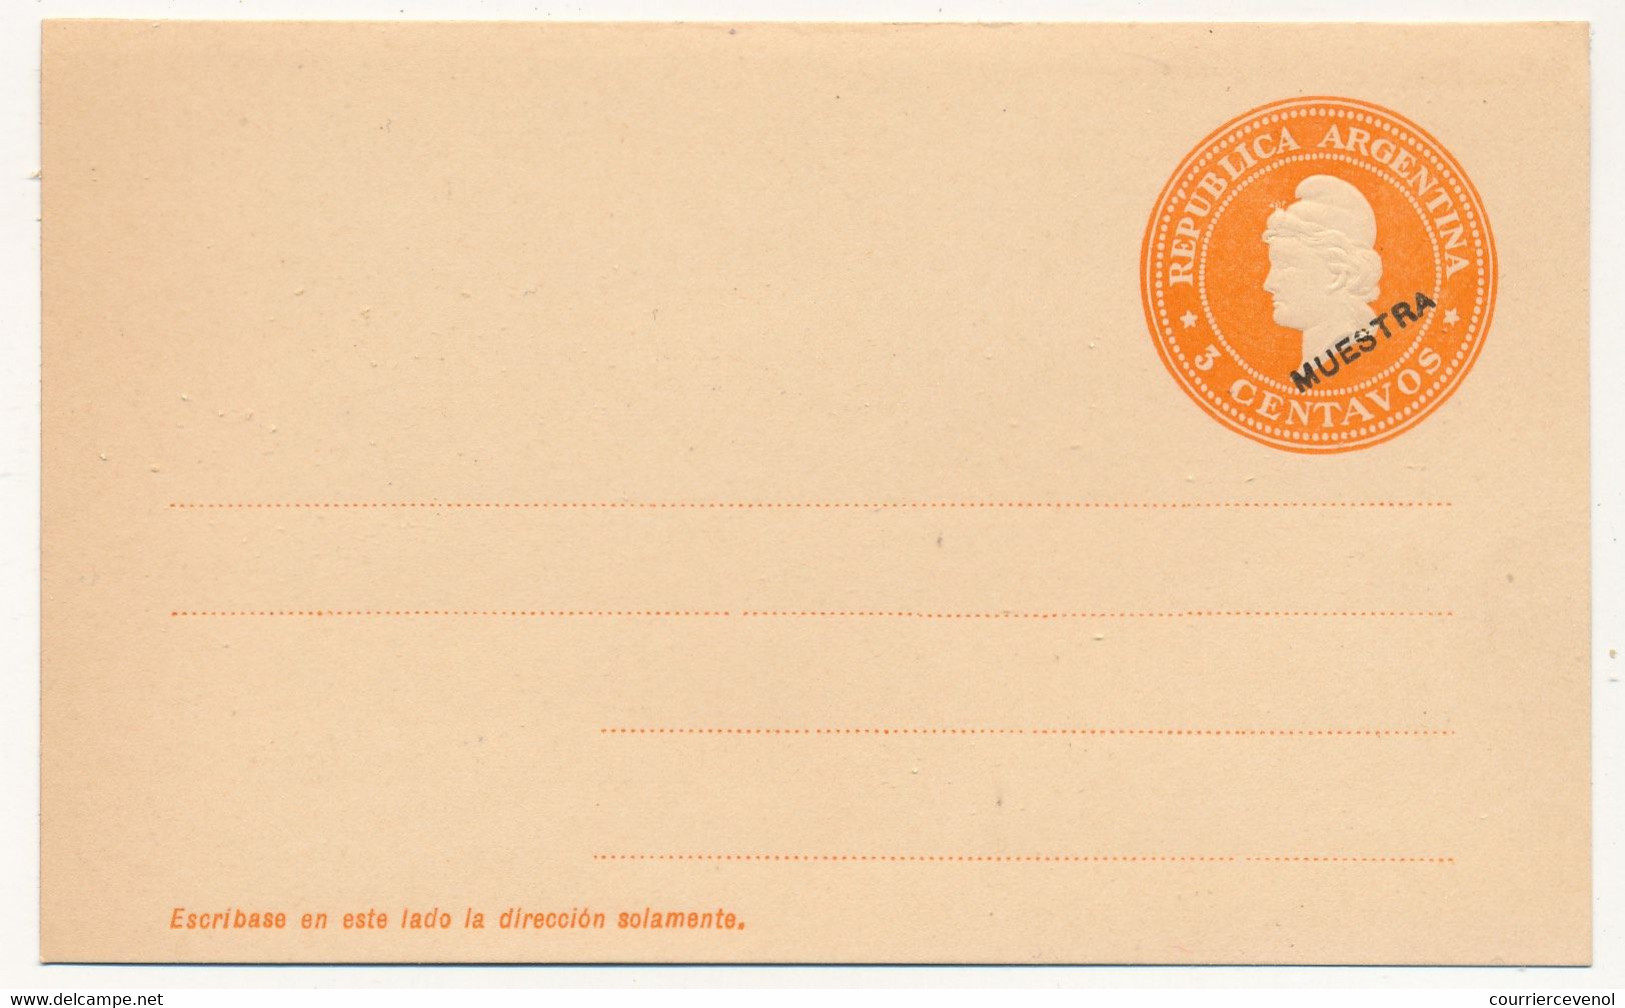 ARGENTINE - Entier Postal - Carte Postale - 3 Centavos (MUESTRA) - Non Illustrée - Postal Stationery